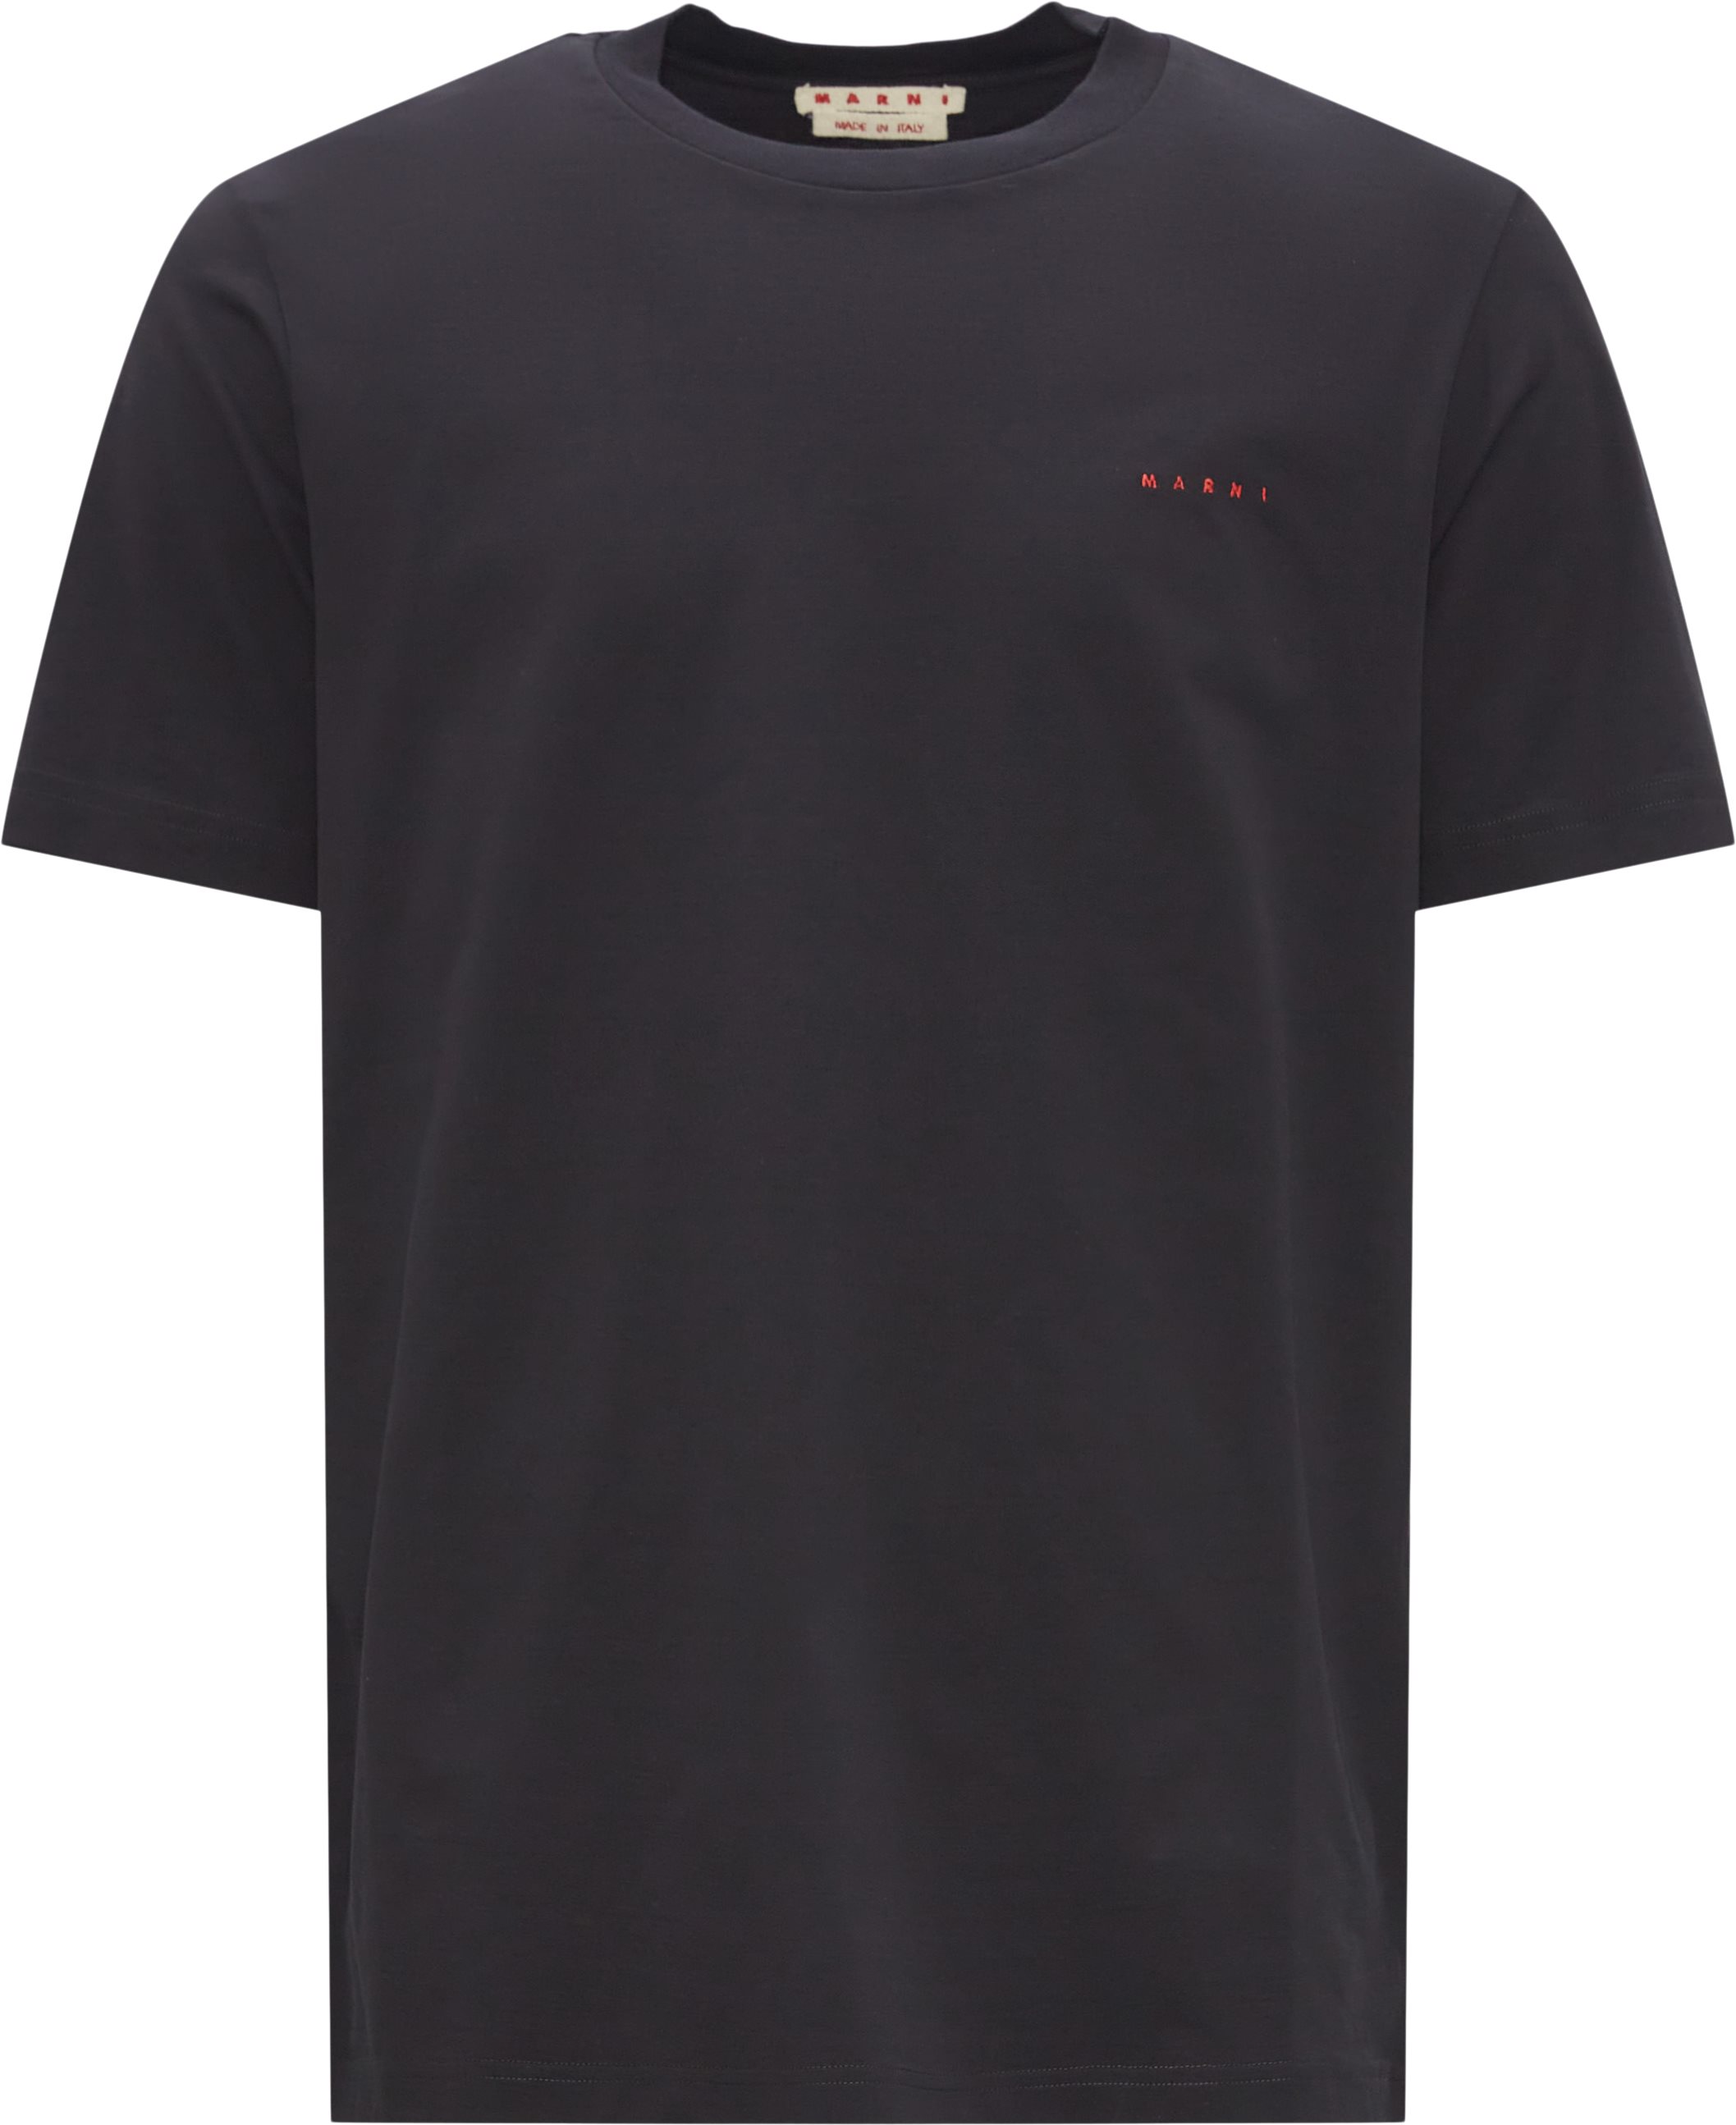 Marni T-shirts HUMU0170SO UTC017 Black